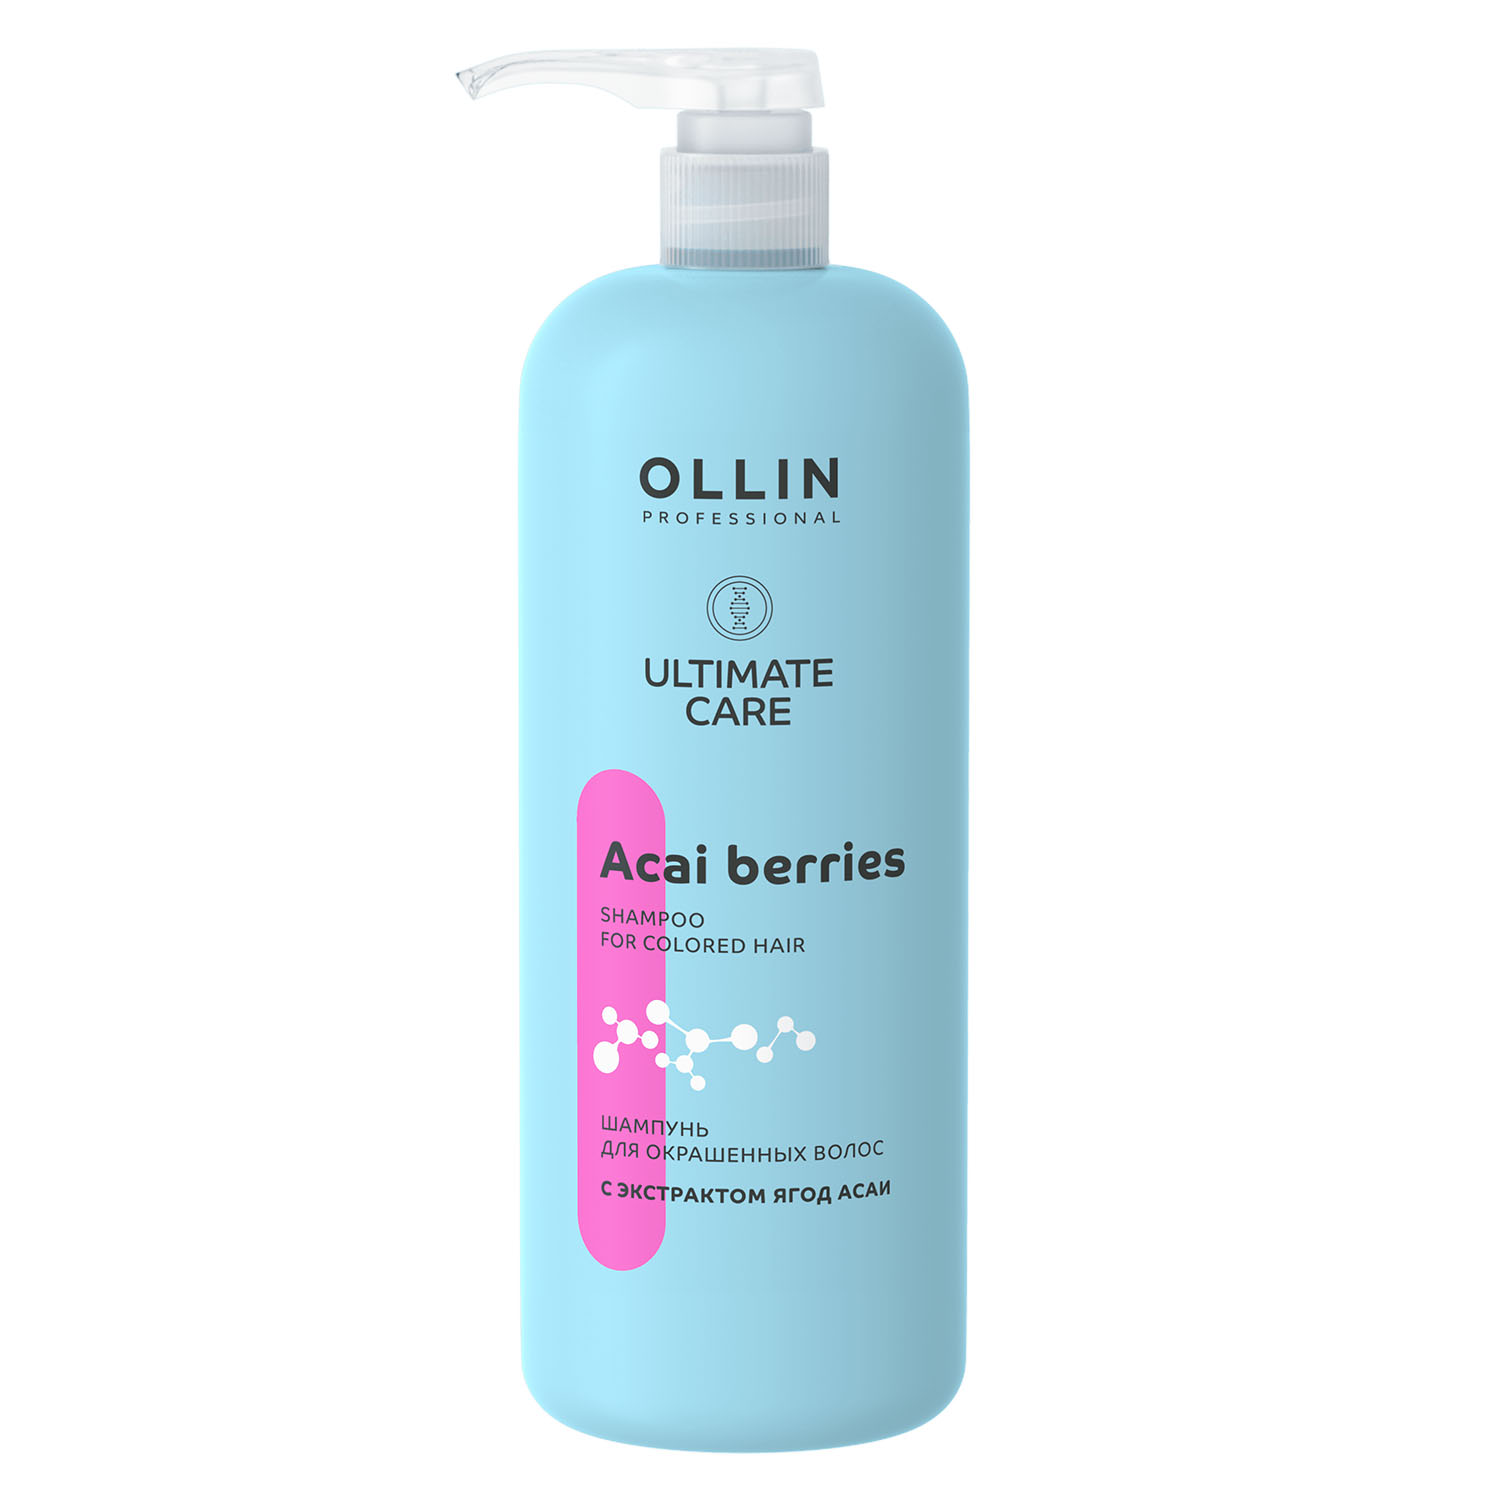 Ollin Professional Шампунь для окрашенных волос с экстрактом ягод асаи, 1000 мл (Ollin Professional, Ultimate Care)